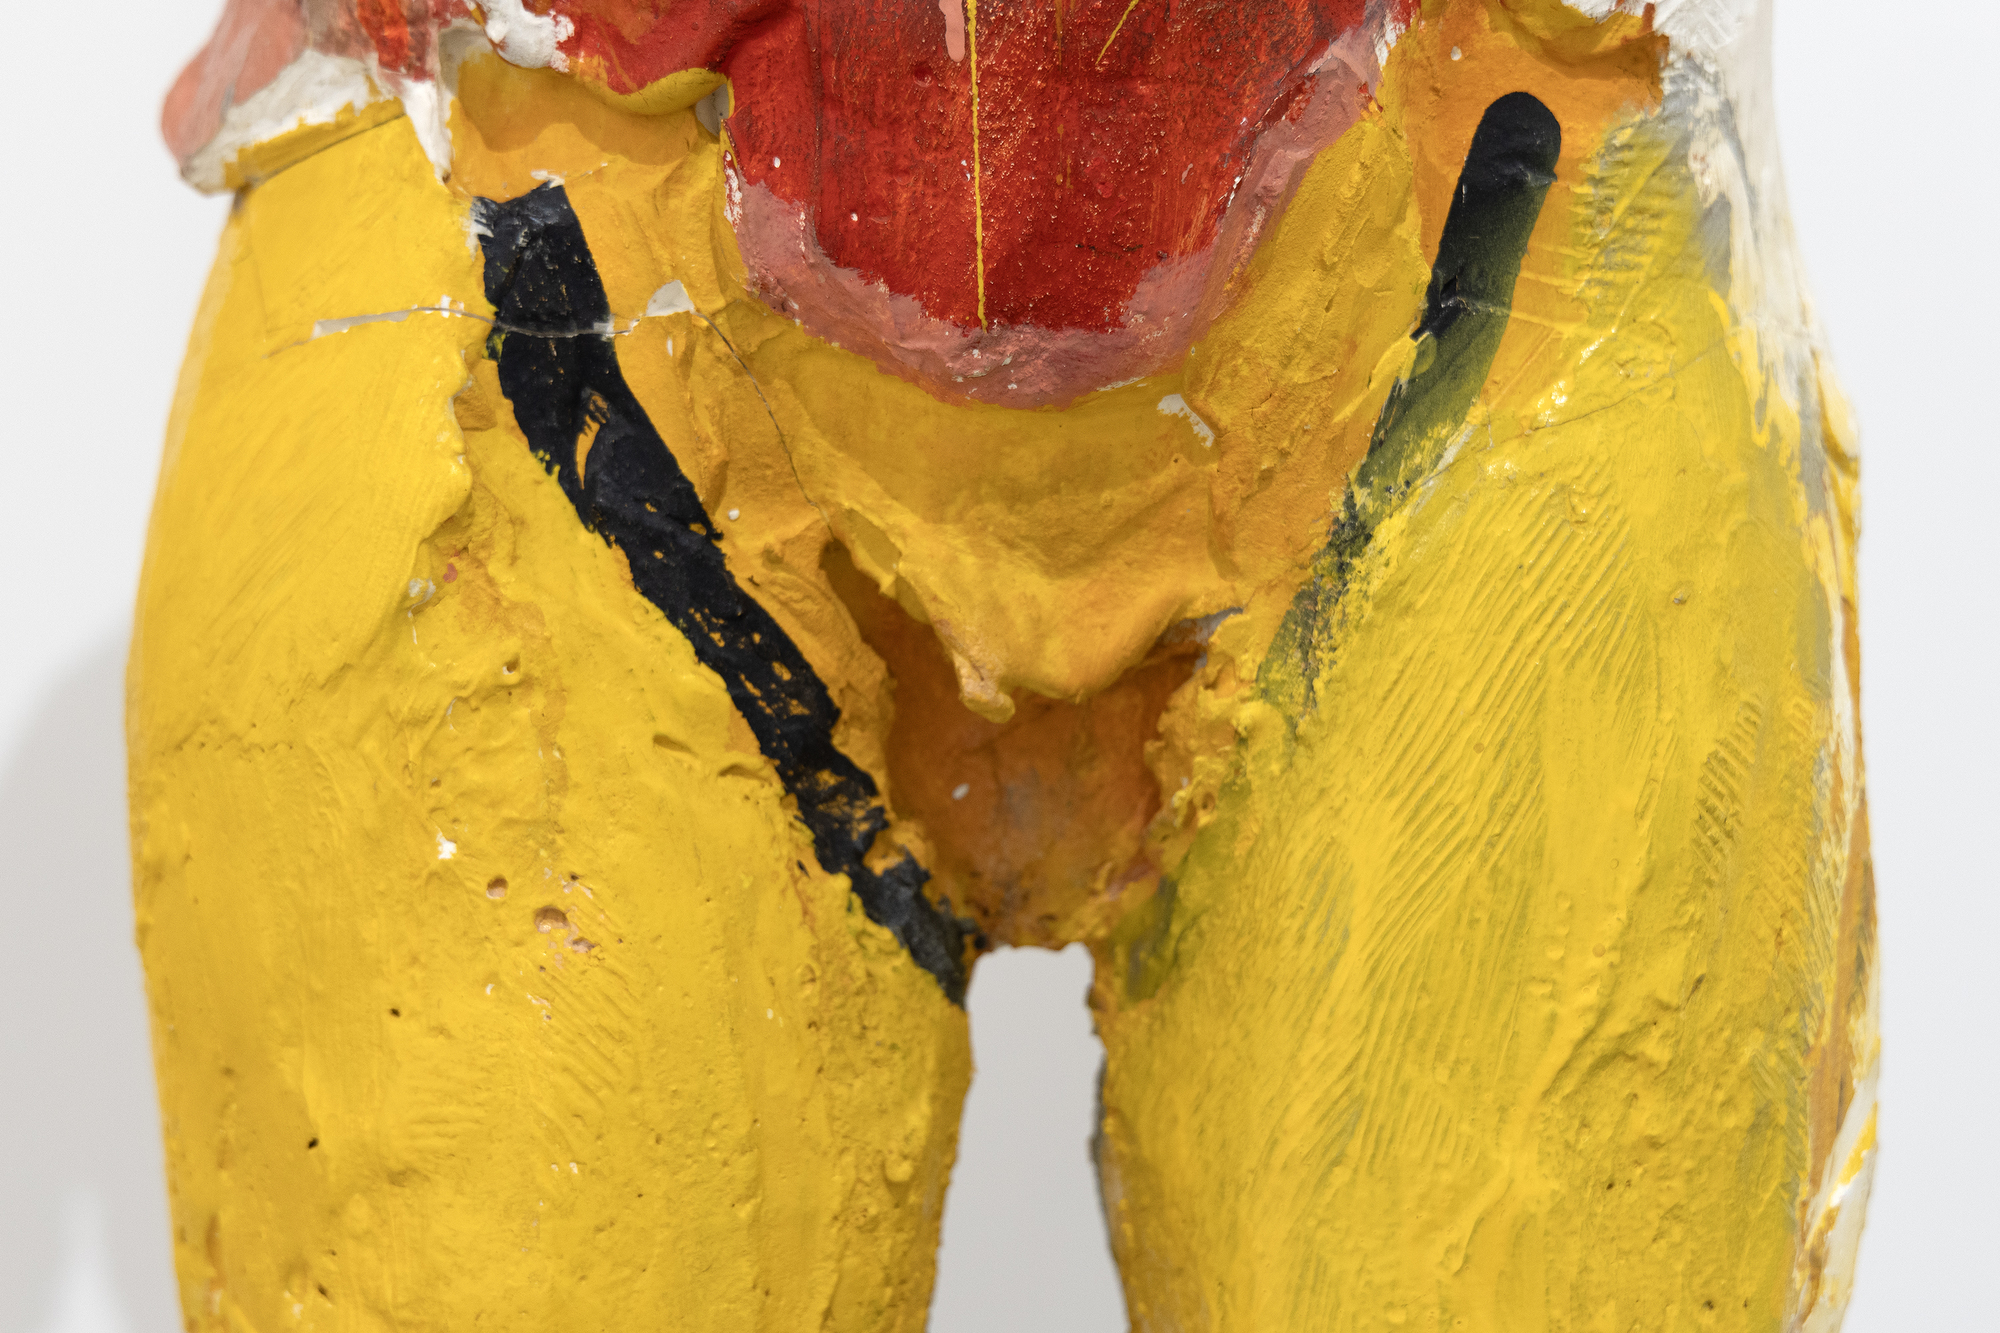 Las primeras obras de papel maché de Manuel Neri abrieron camino en la técnica escultórica, y su enfoque de la pintura de sus esculturas refleja su profundo compromiso con el potencial expresivo del color y la forma. La elección y colocación de los colores en Hombre Colorado II crea una respuesta particularmente visceral que refleja su comprensión matizada de la dimensión psicológica y emocional del color. Conceptualizado y producido en 1958, Hombre Colorado II refleja una época en la que Neri y su esposa Joan Brown estaban involucrados en un rico intercambio artístico de creatividad y contribuyeron significativamente a la evolución de sus respectivos estilos y al Movimiento Figurativo del Área de la Bahía, en el que desempeñaron un papel vital.